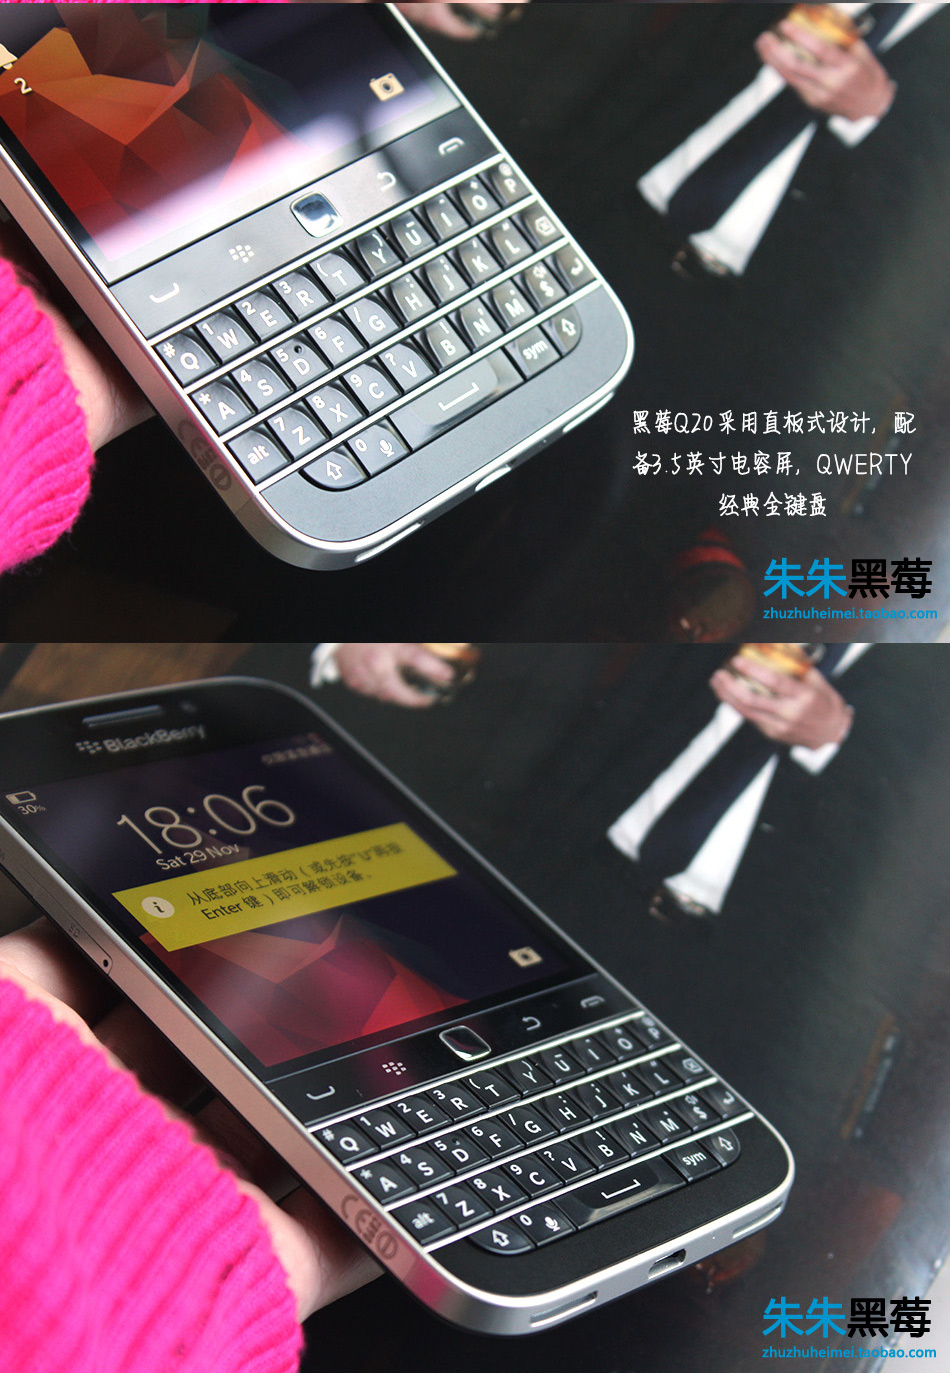 【黑莓 Q20(Classic)促销】BlackBerry\/黑莓 Classic Q20 全键盘港版现货 超低价热销中-ZOL中关村商城